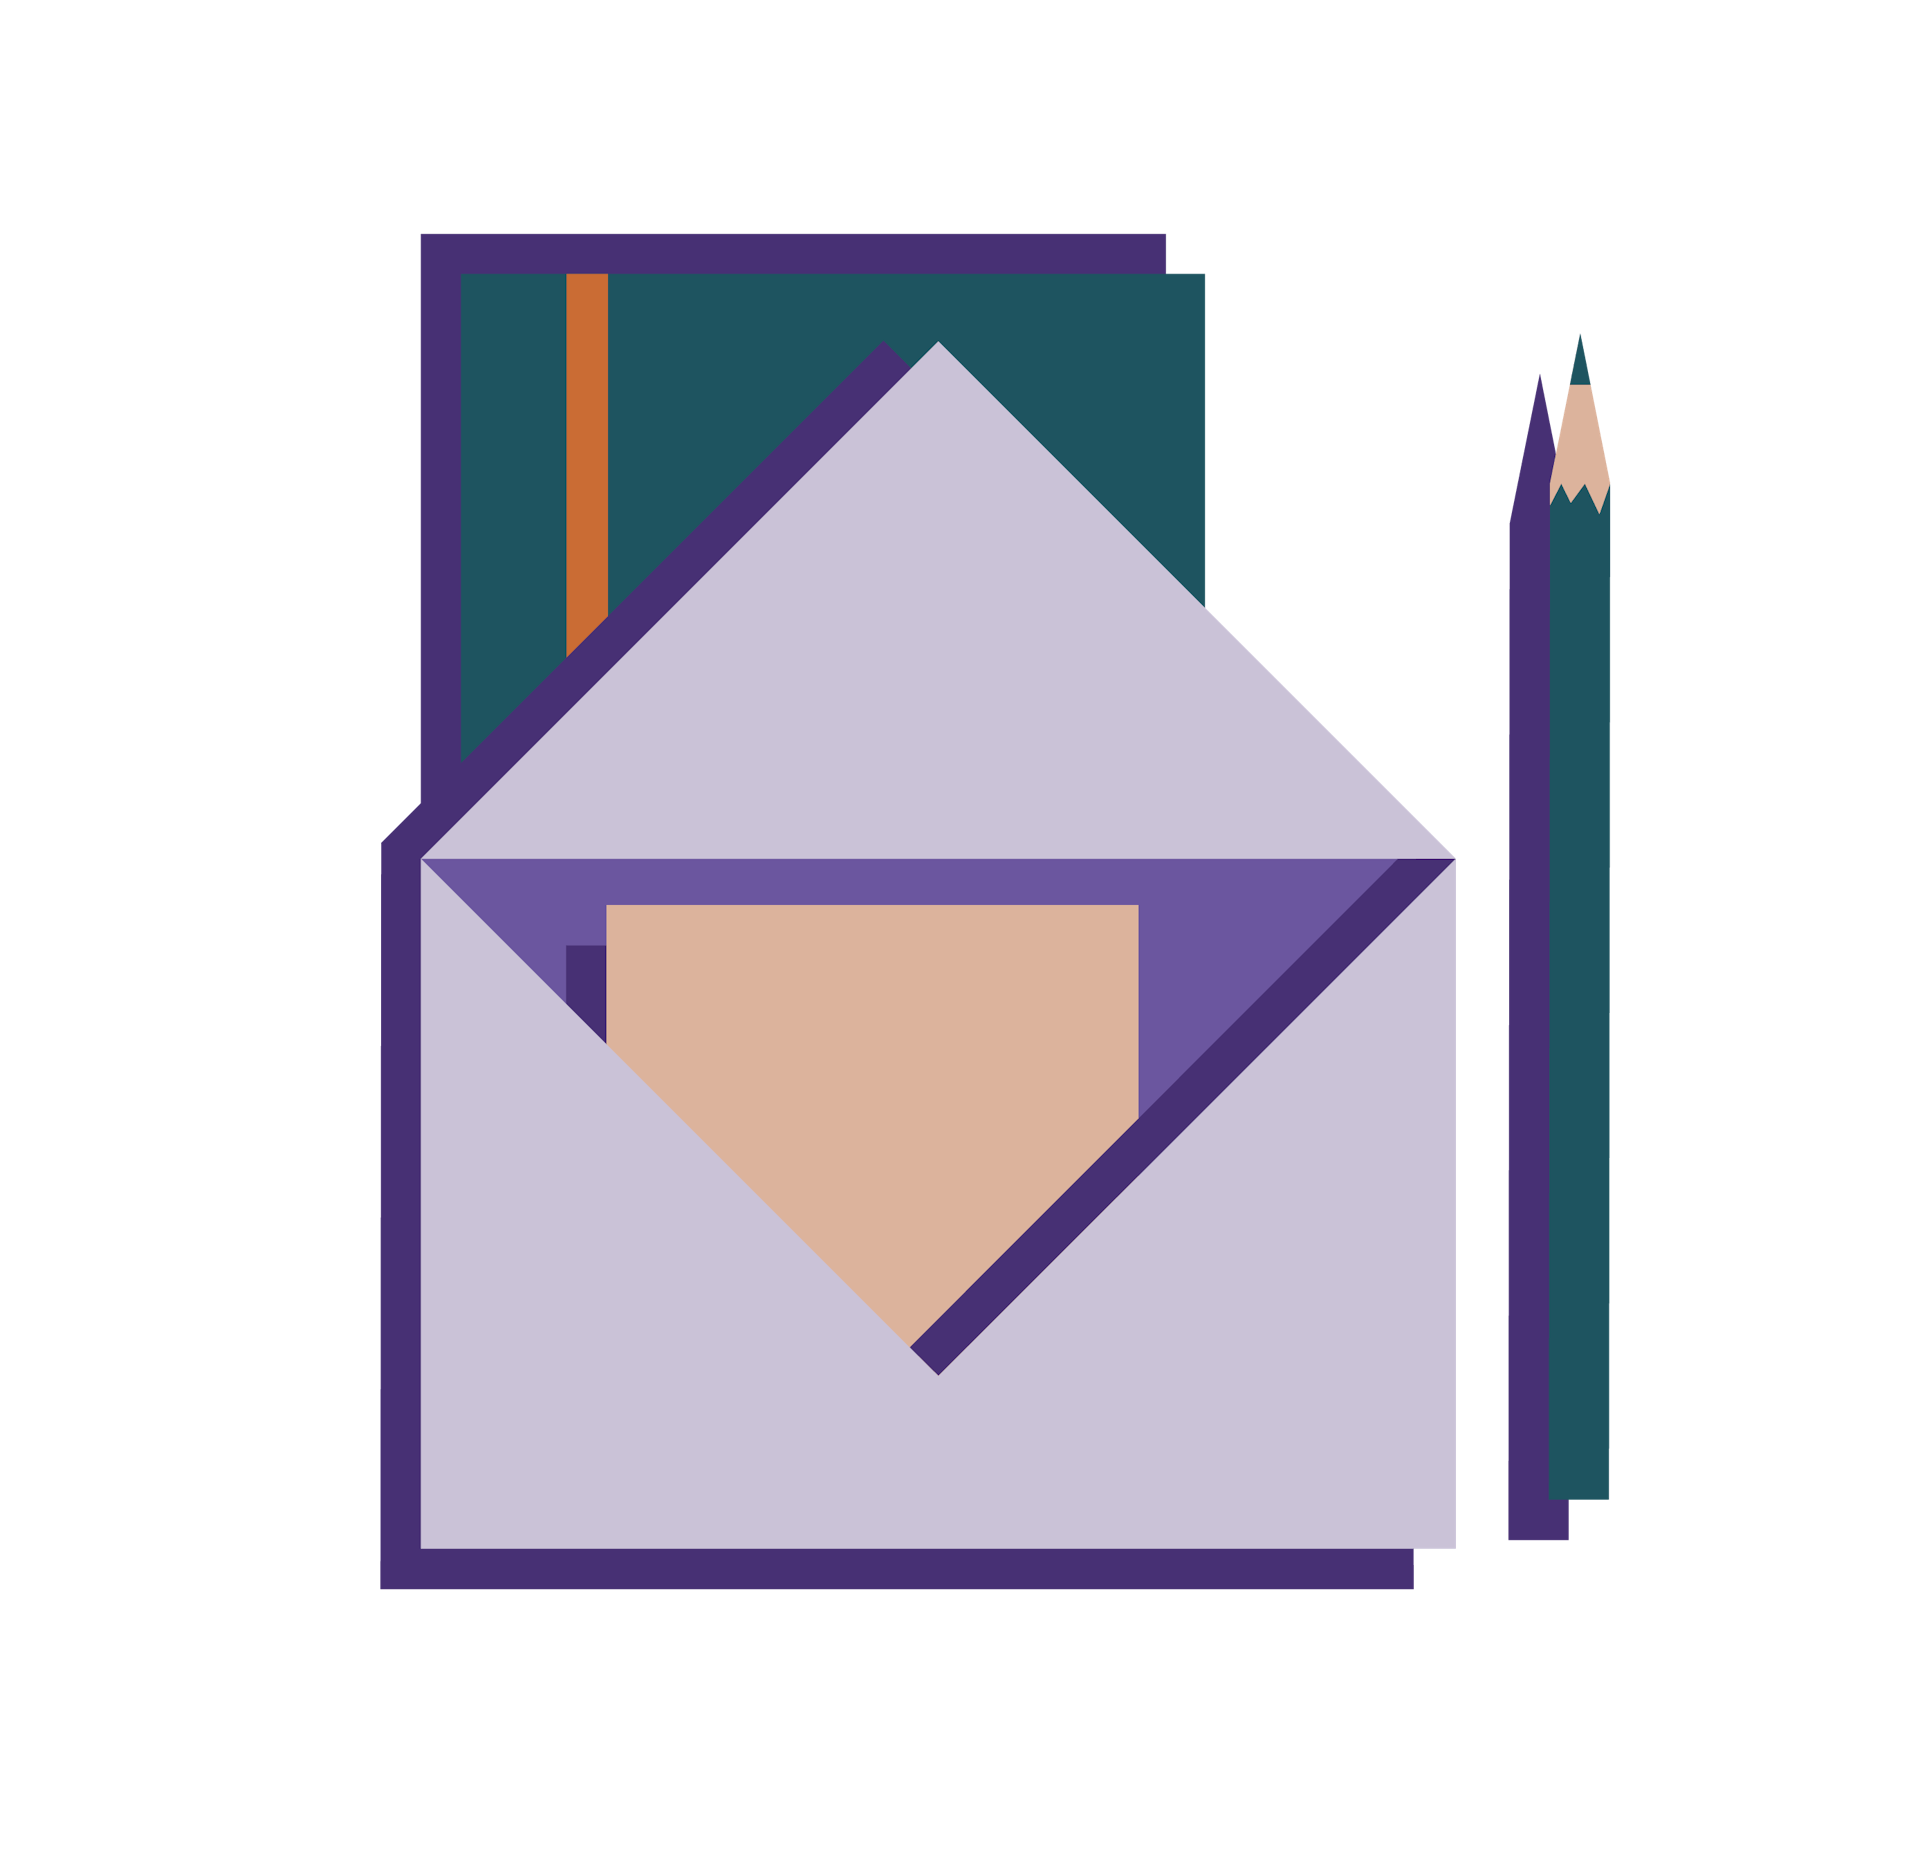 Der Kontist Letter für Selbständige und Freelancer, dargestellt im klassischen Briefumschlag mit Notizbuch und Stif